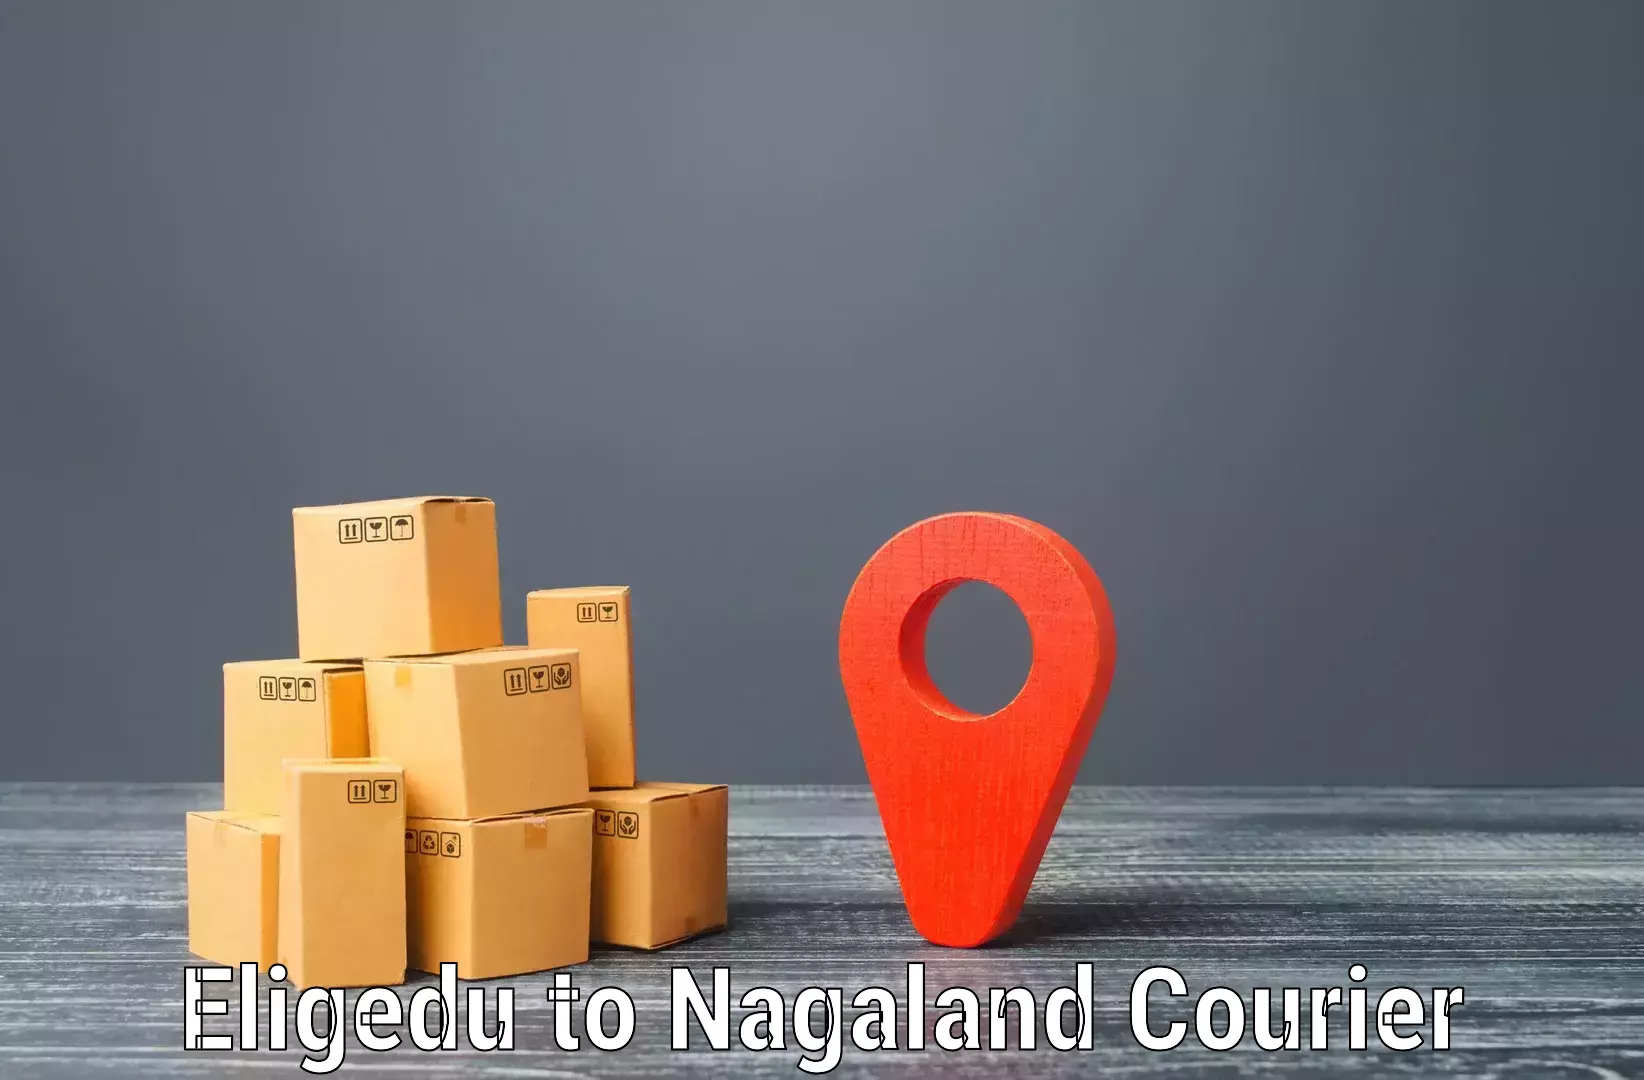 Modern parcel services Eligedu to Nagaland